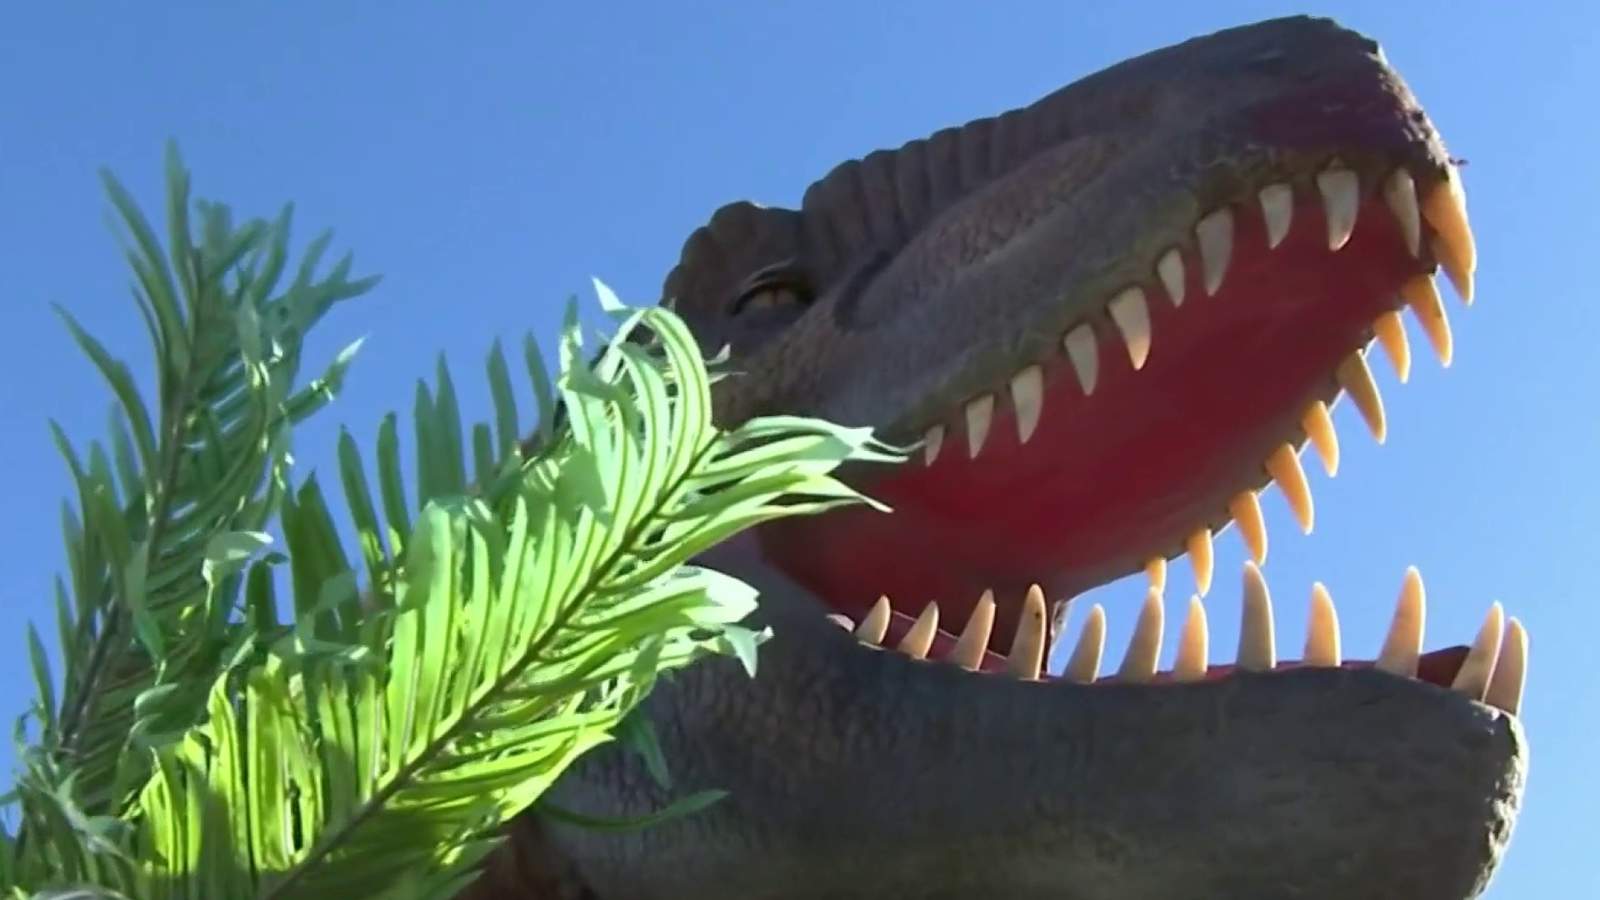 Drive-thru dinosaur experience coming to Orlando